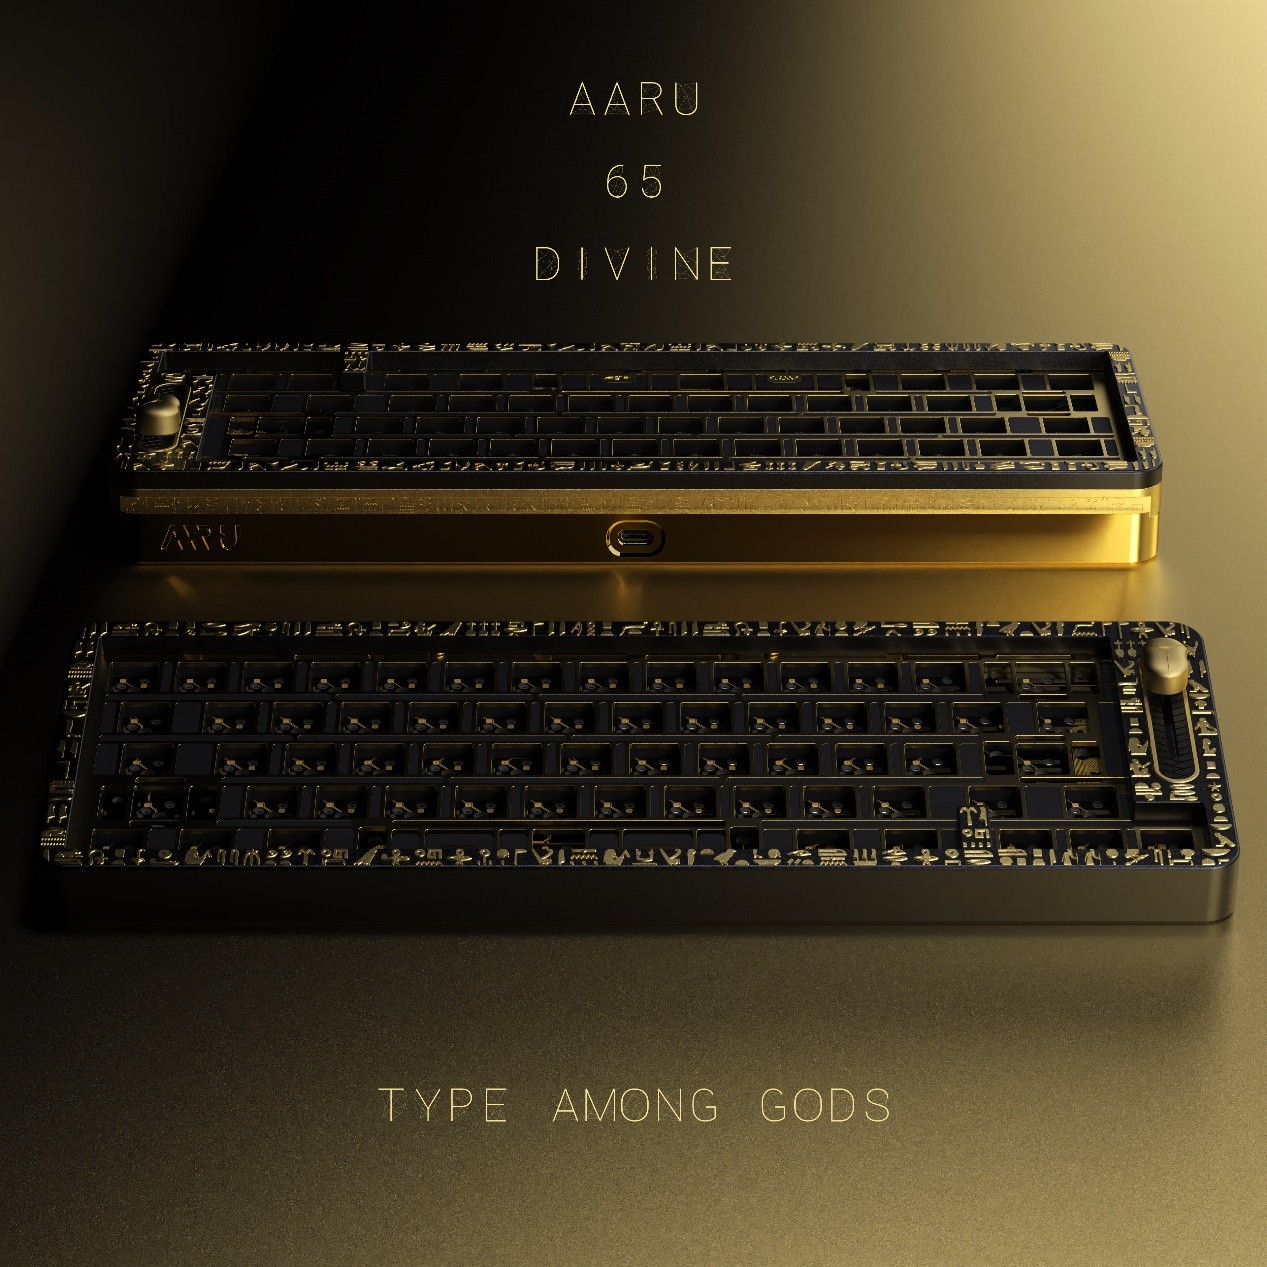 埃及主题Aaru65客制化键盘新一轮团购截团在即.